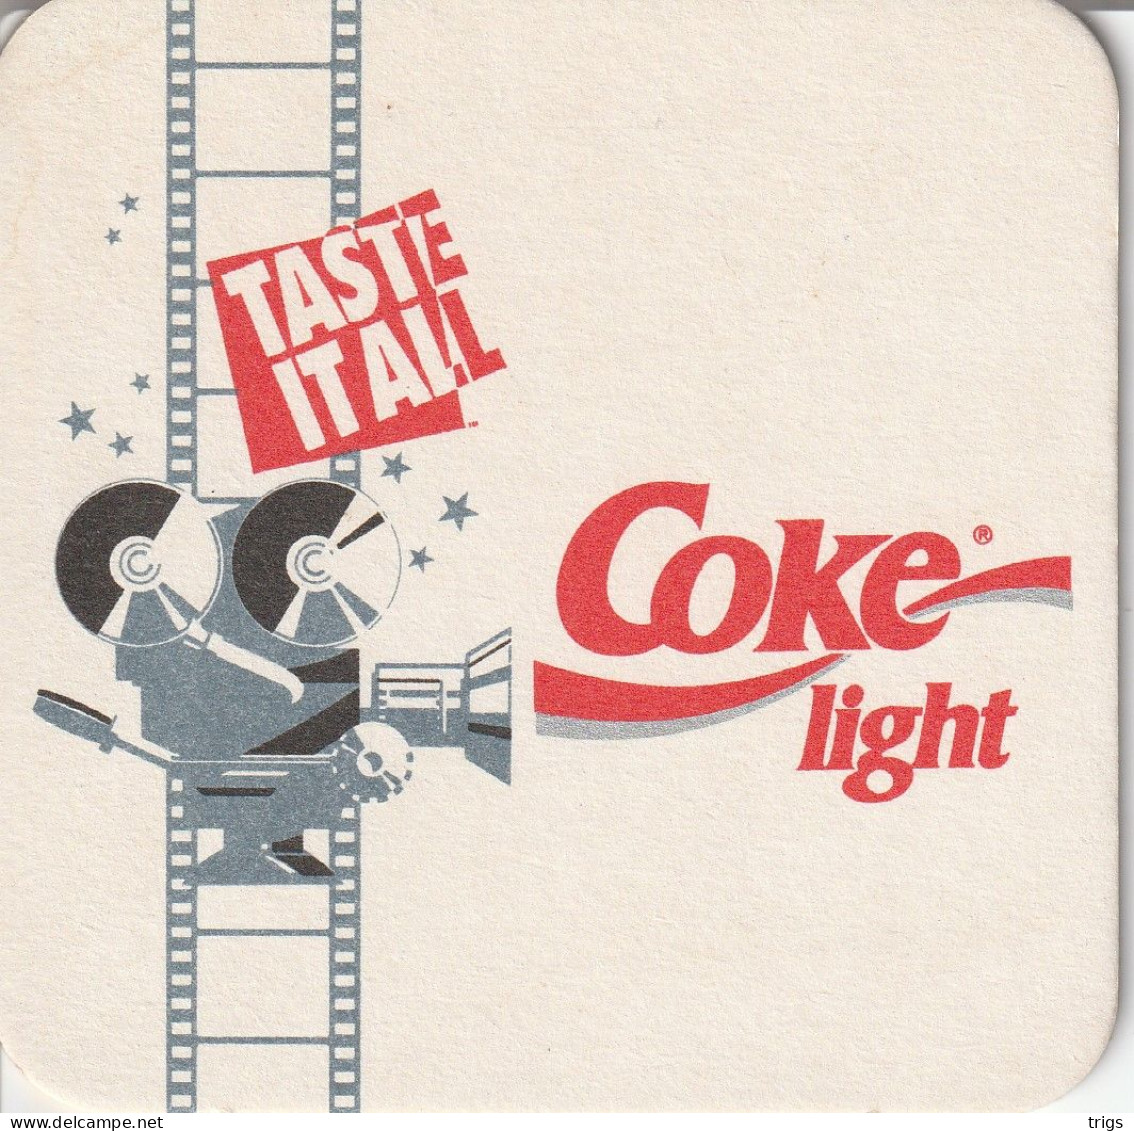 Coca Cola Light - Posavasos (Portavasos)